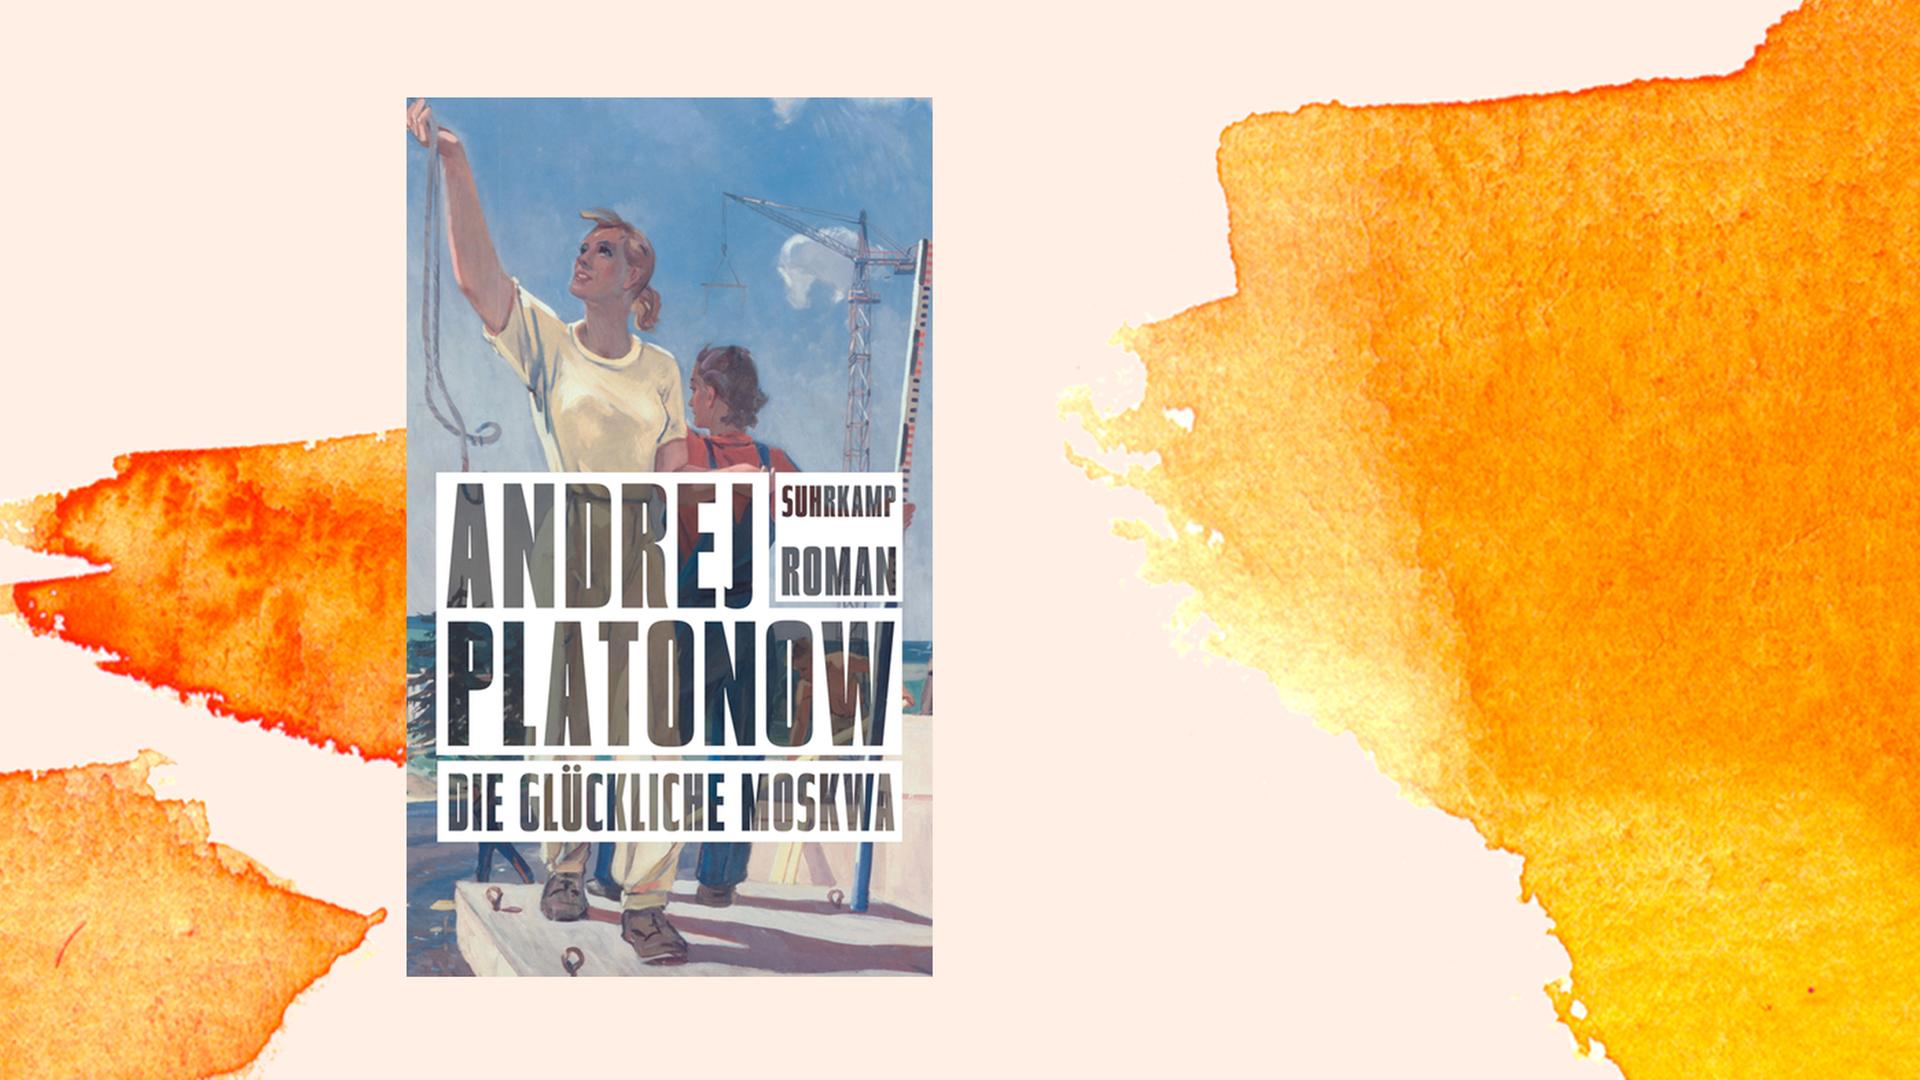 Das Cover des Buchs von Andrej Platonow "Die glückliche Moskwa" vor orangem Hintergrund.